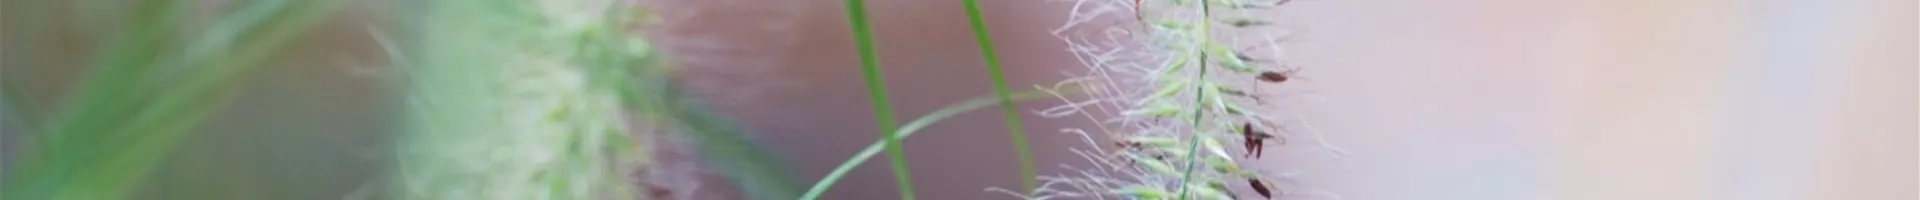 Federborstengras - Einpflanzen im Garten (thumbnail).jpg